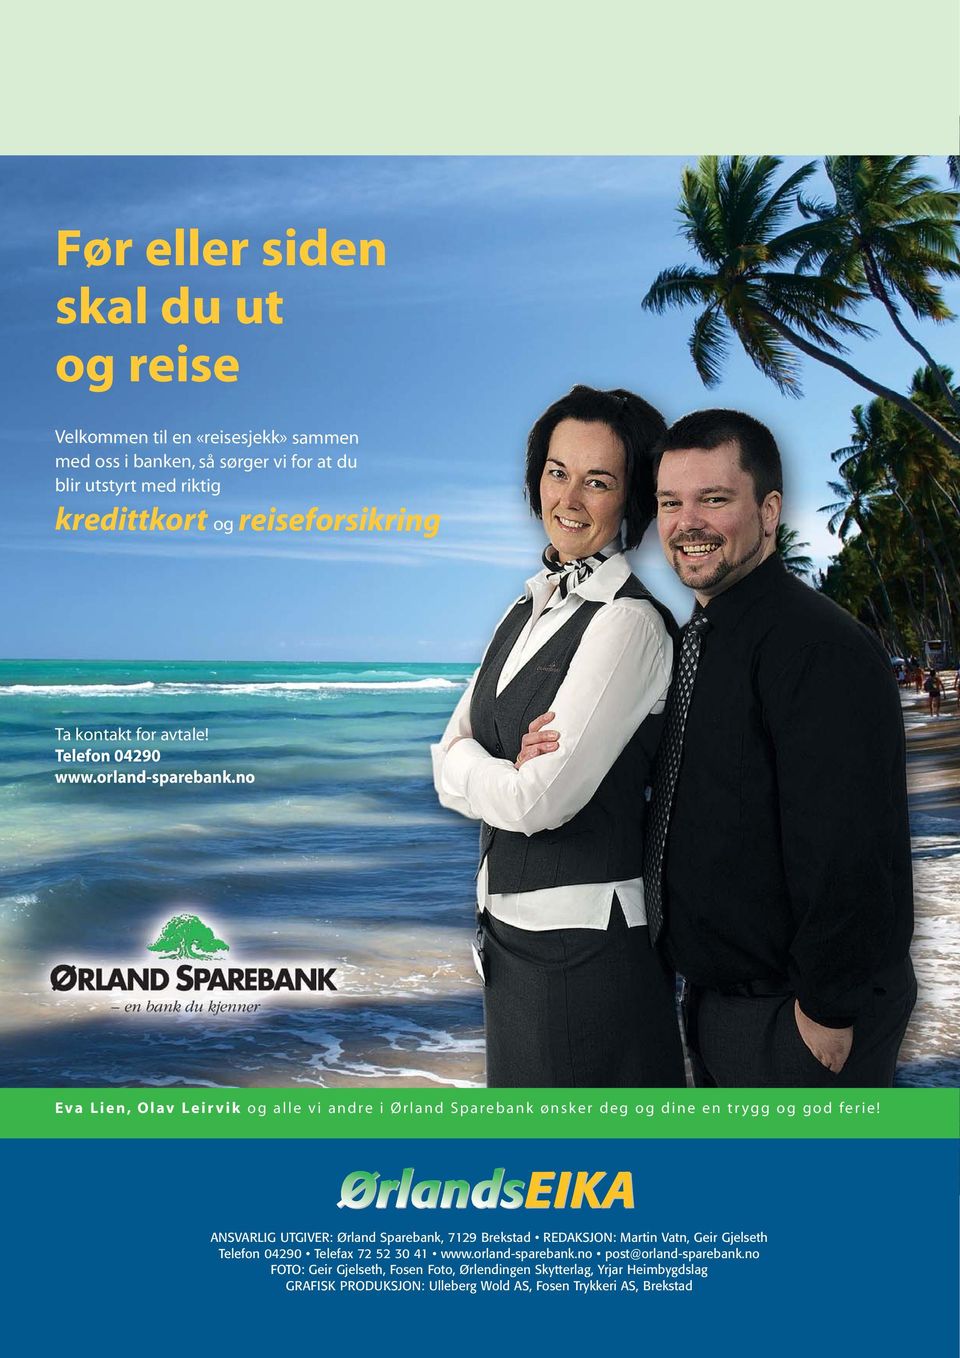 no Eva Lien, Olav Leirvik og alle vi andre i Ørland Sparebank ønsker deg og dine en trygg og god ferie!